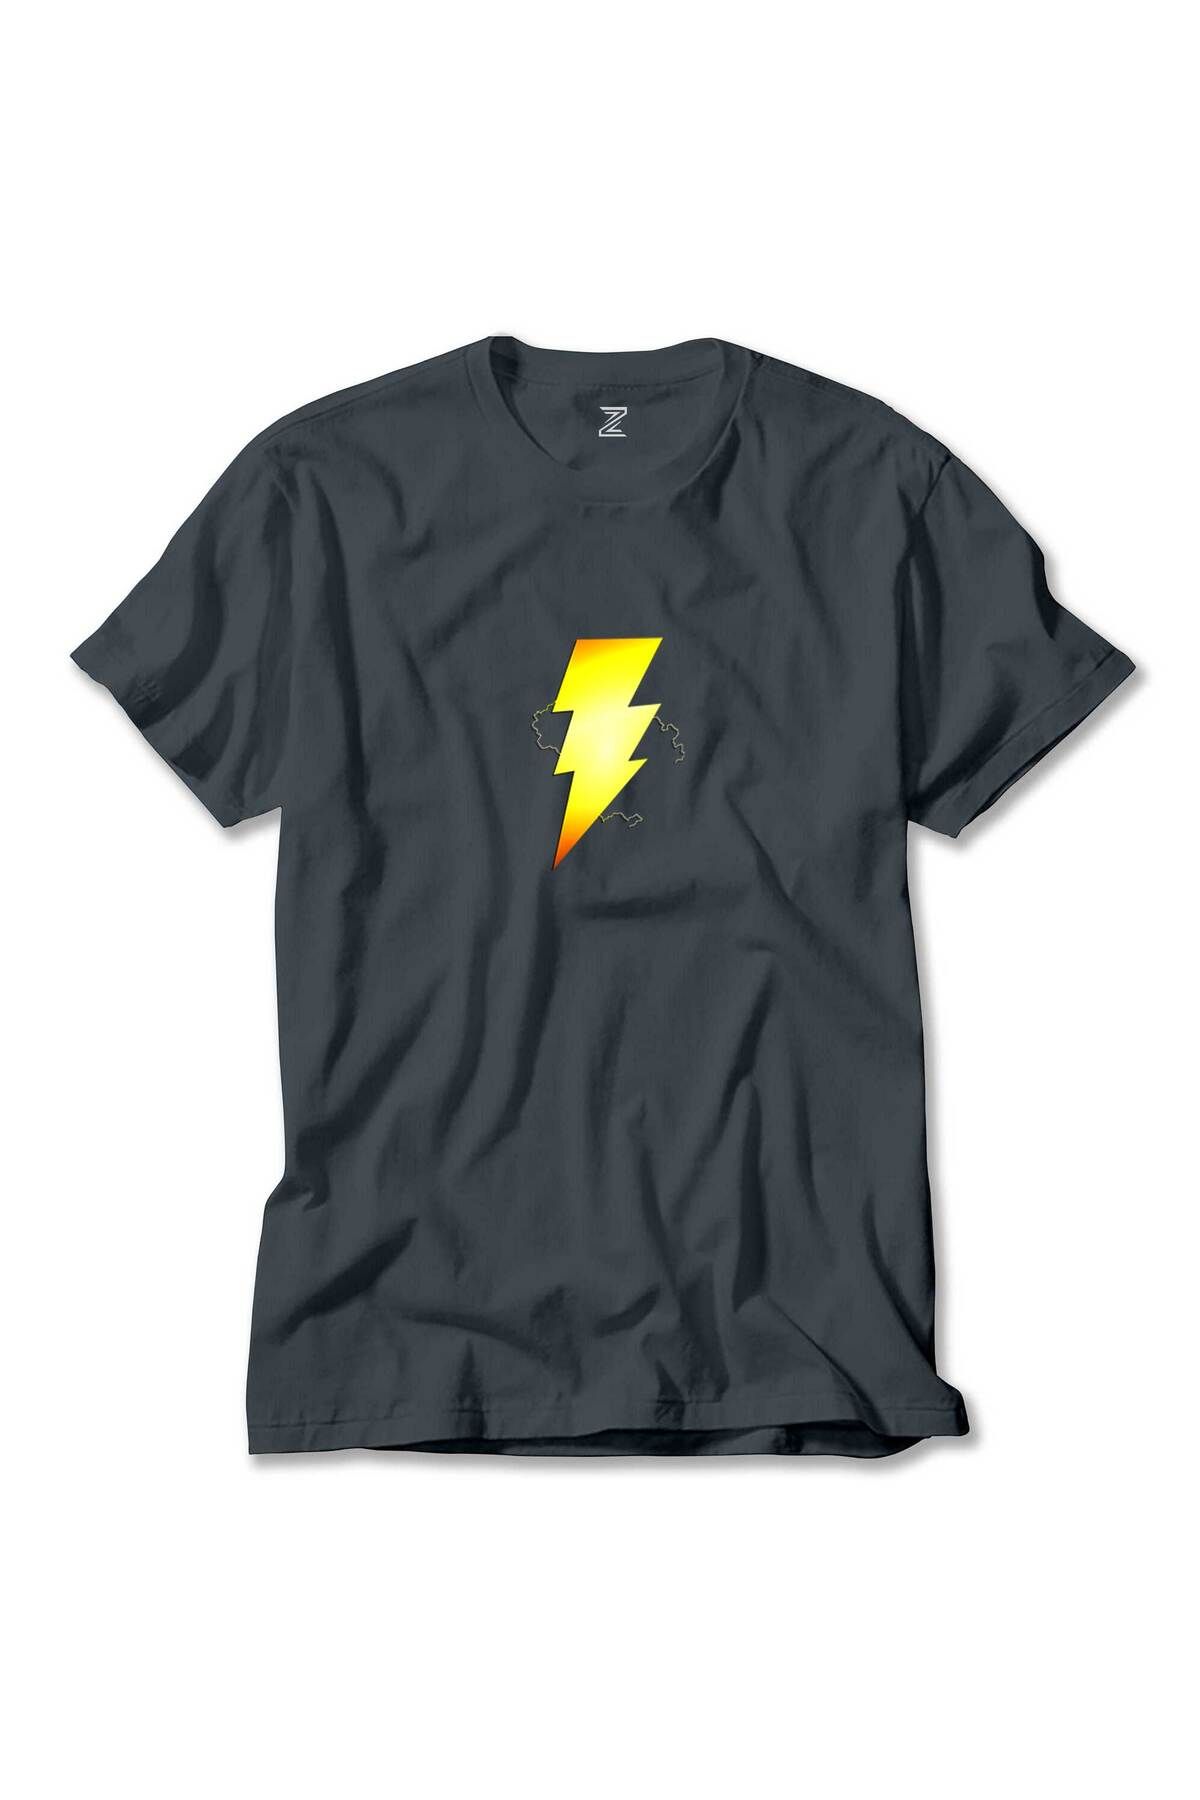 Z zepplin Shazam Logo Füme Tişört